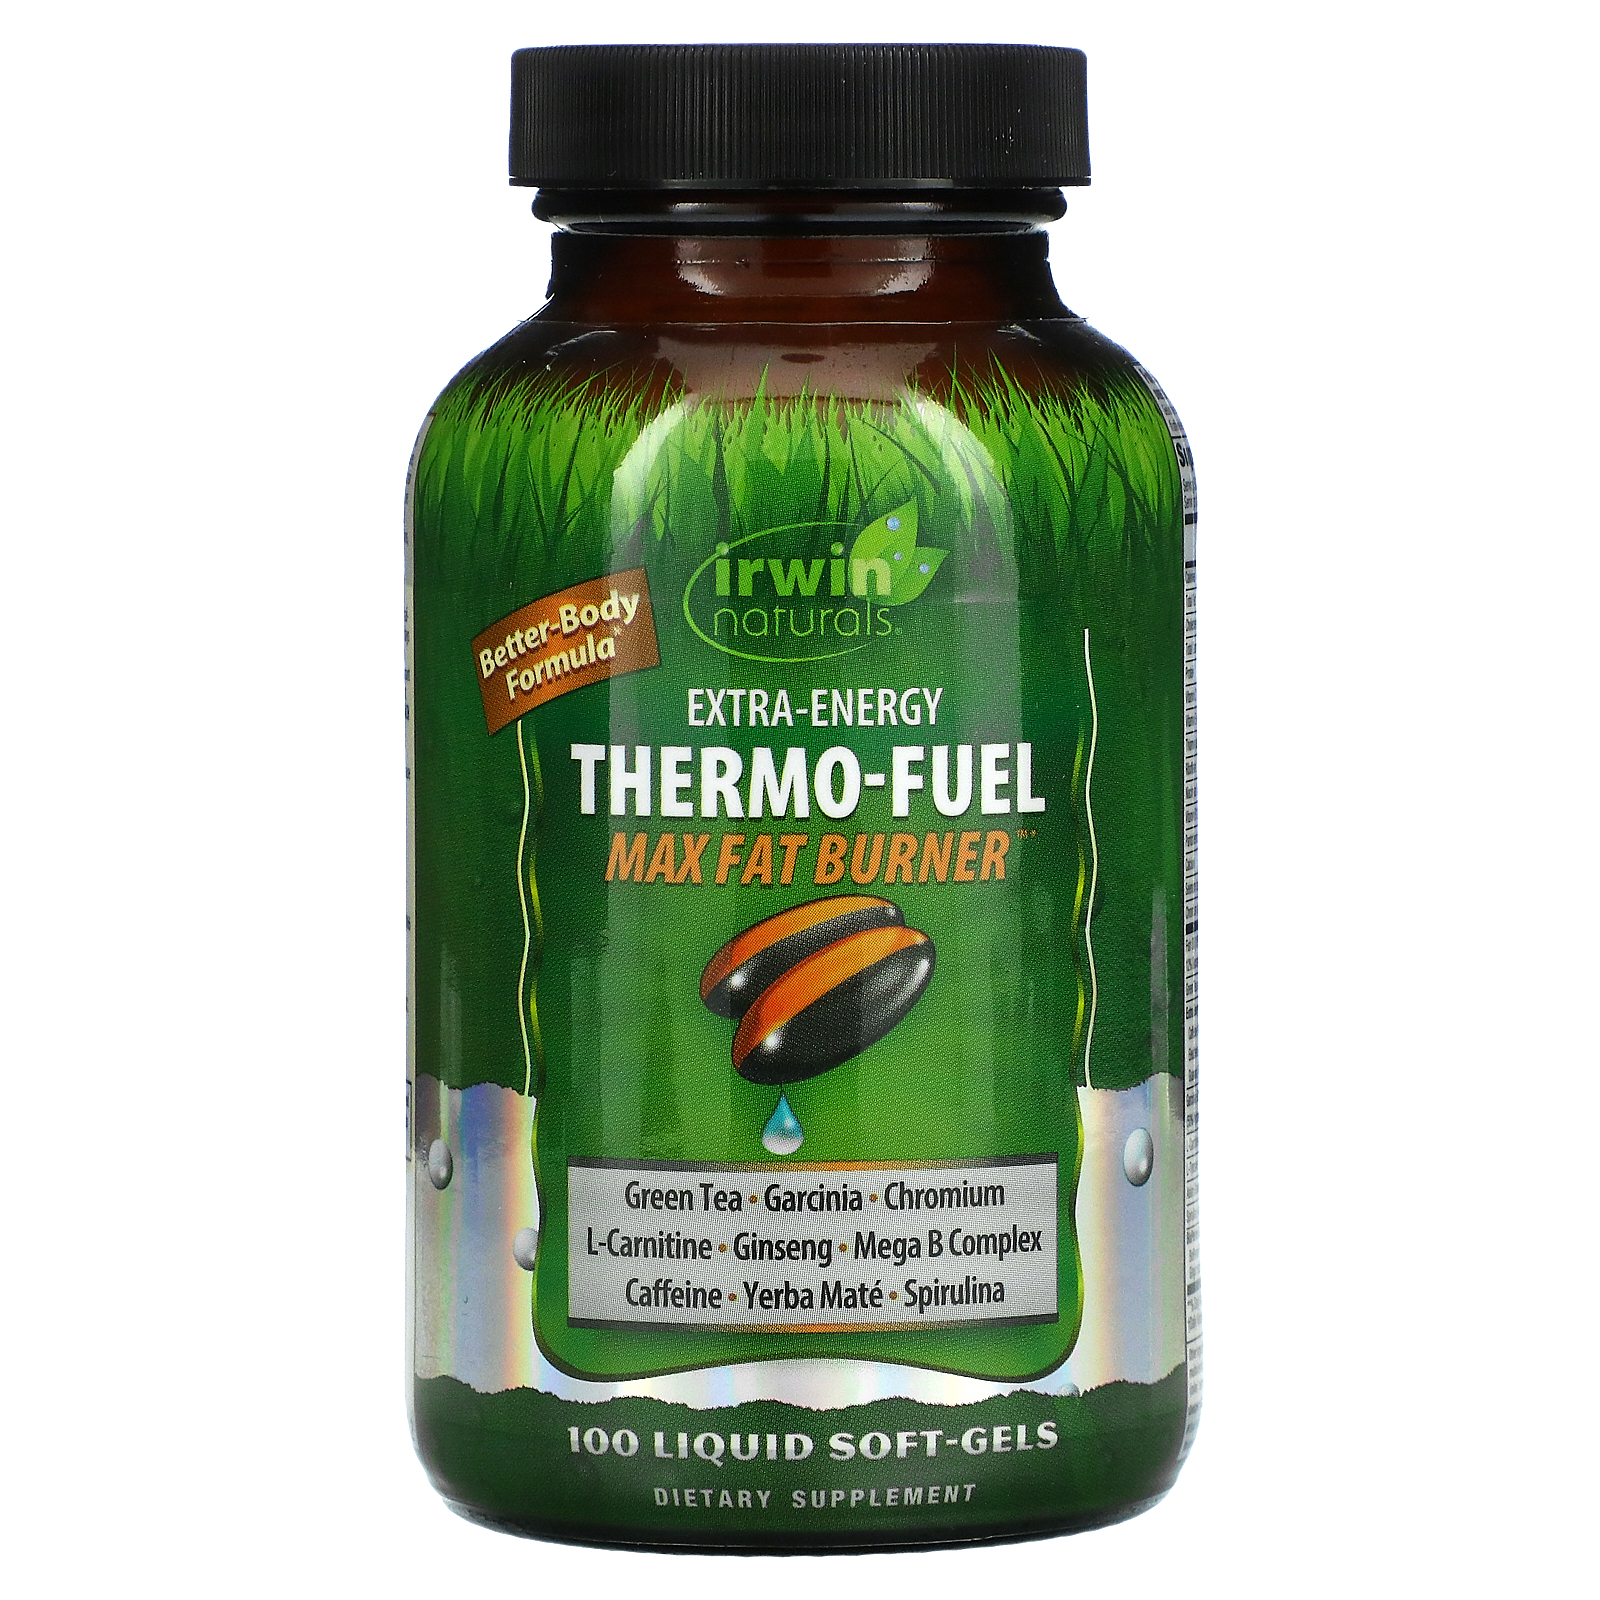 Irwin Naturals Extra-Energy Thermo-Fuel Max Fat Burner / 100 Liquid Soft-Gels